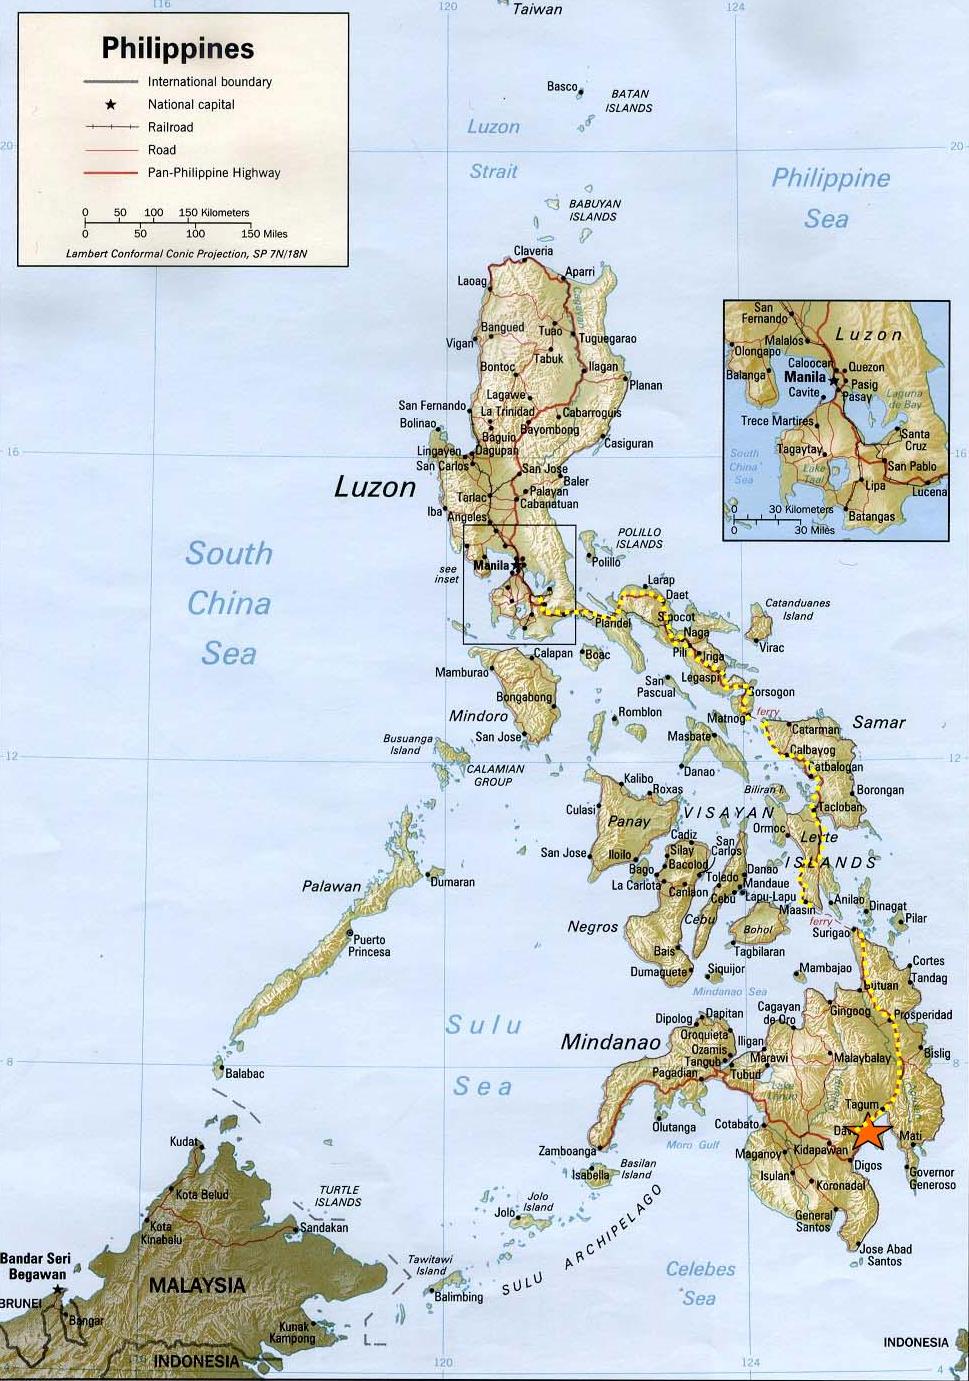 Leyte Island